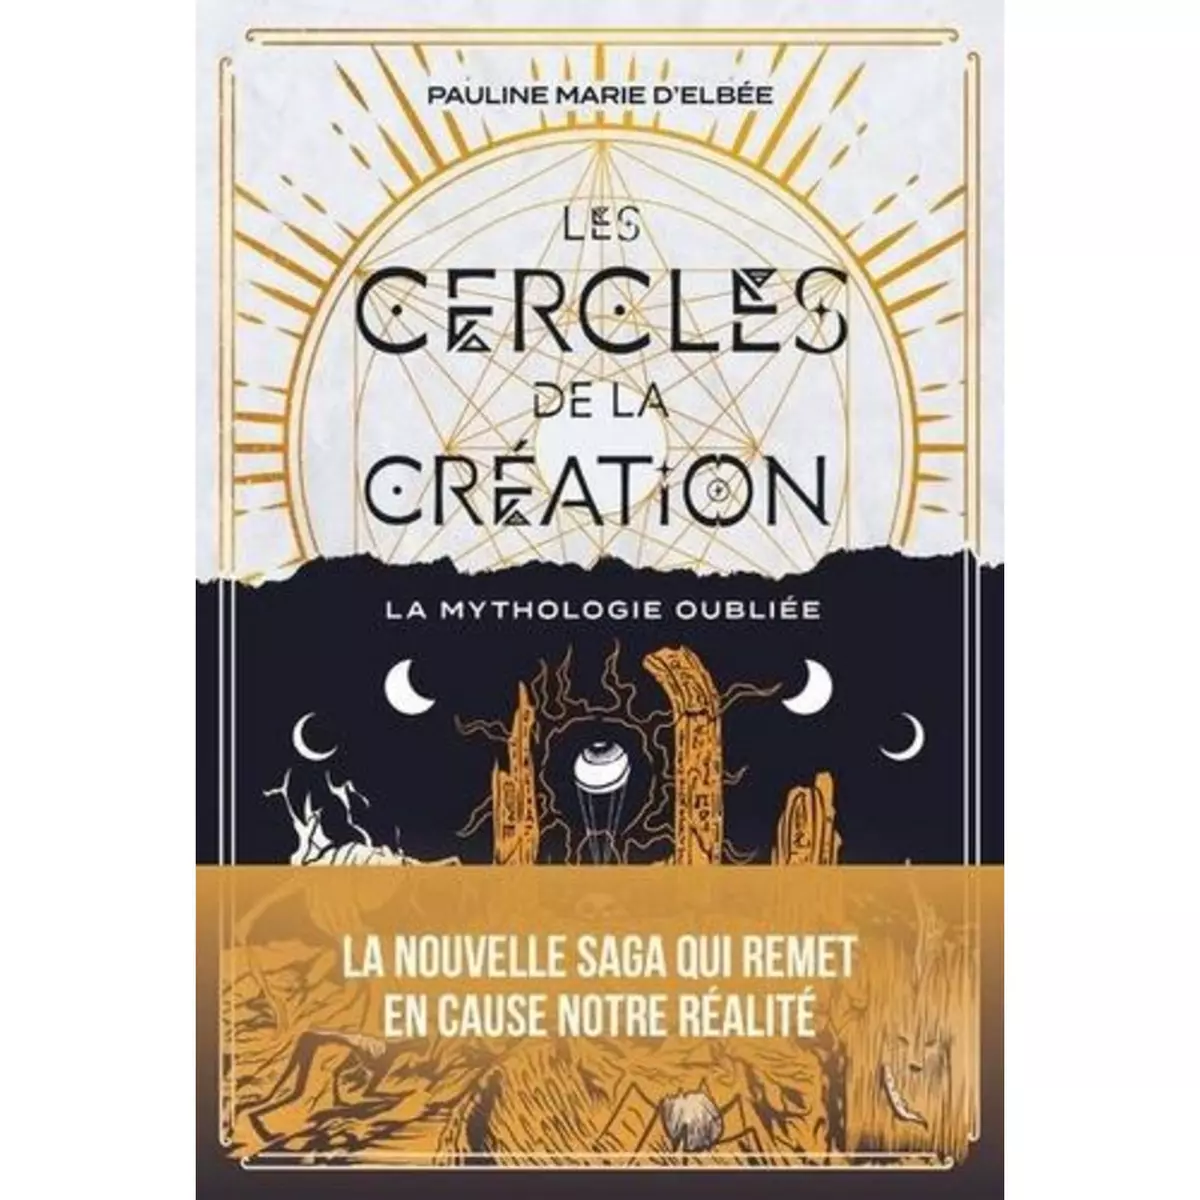  LES CERCLES DE LA CREATION. LA MYTHOLOGIE OUBLIEE, Elbée Pauline Marie d'